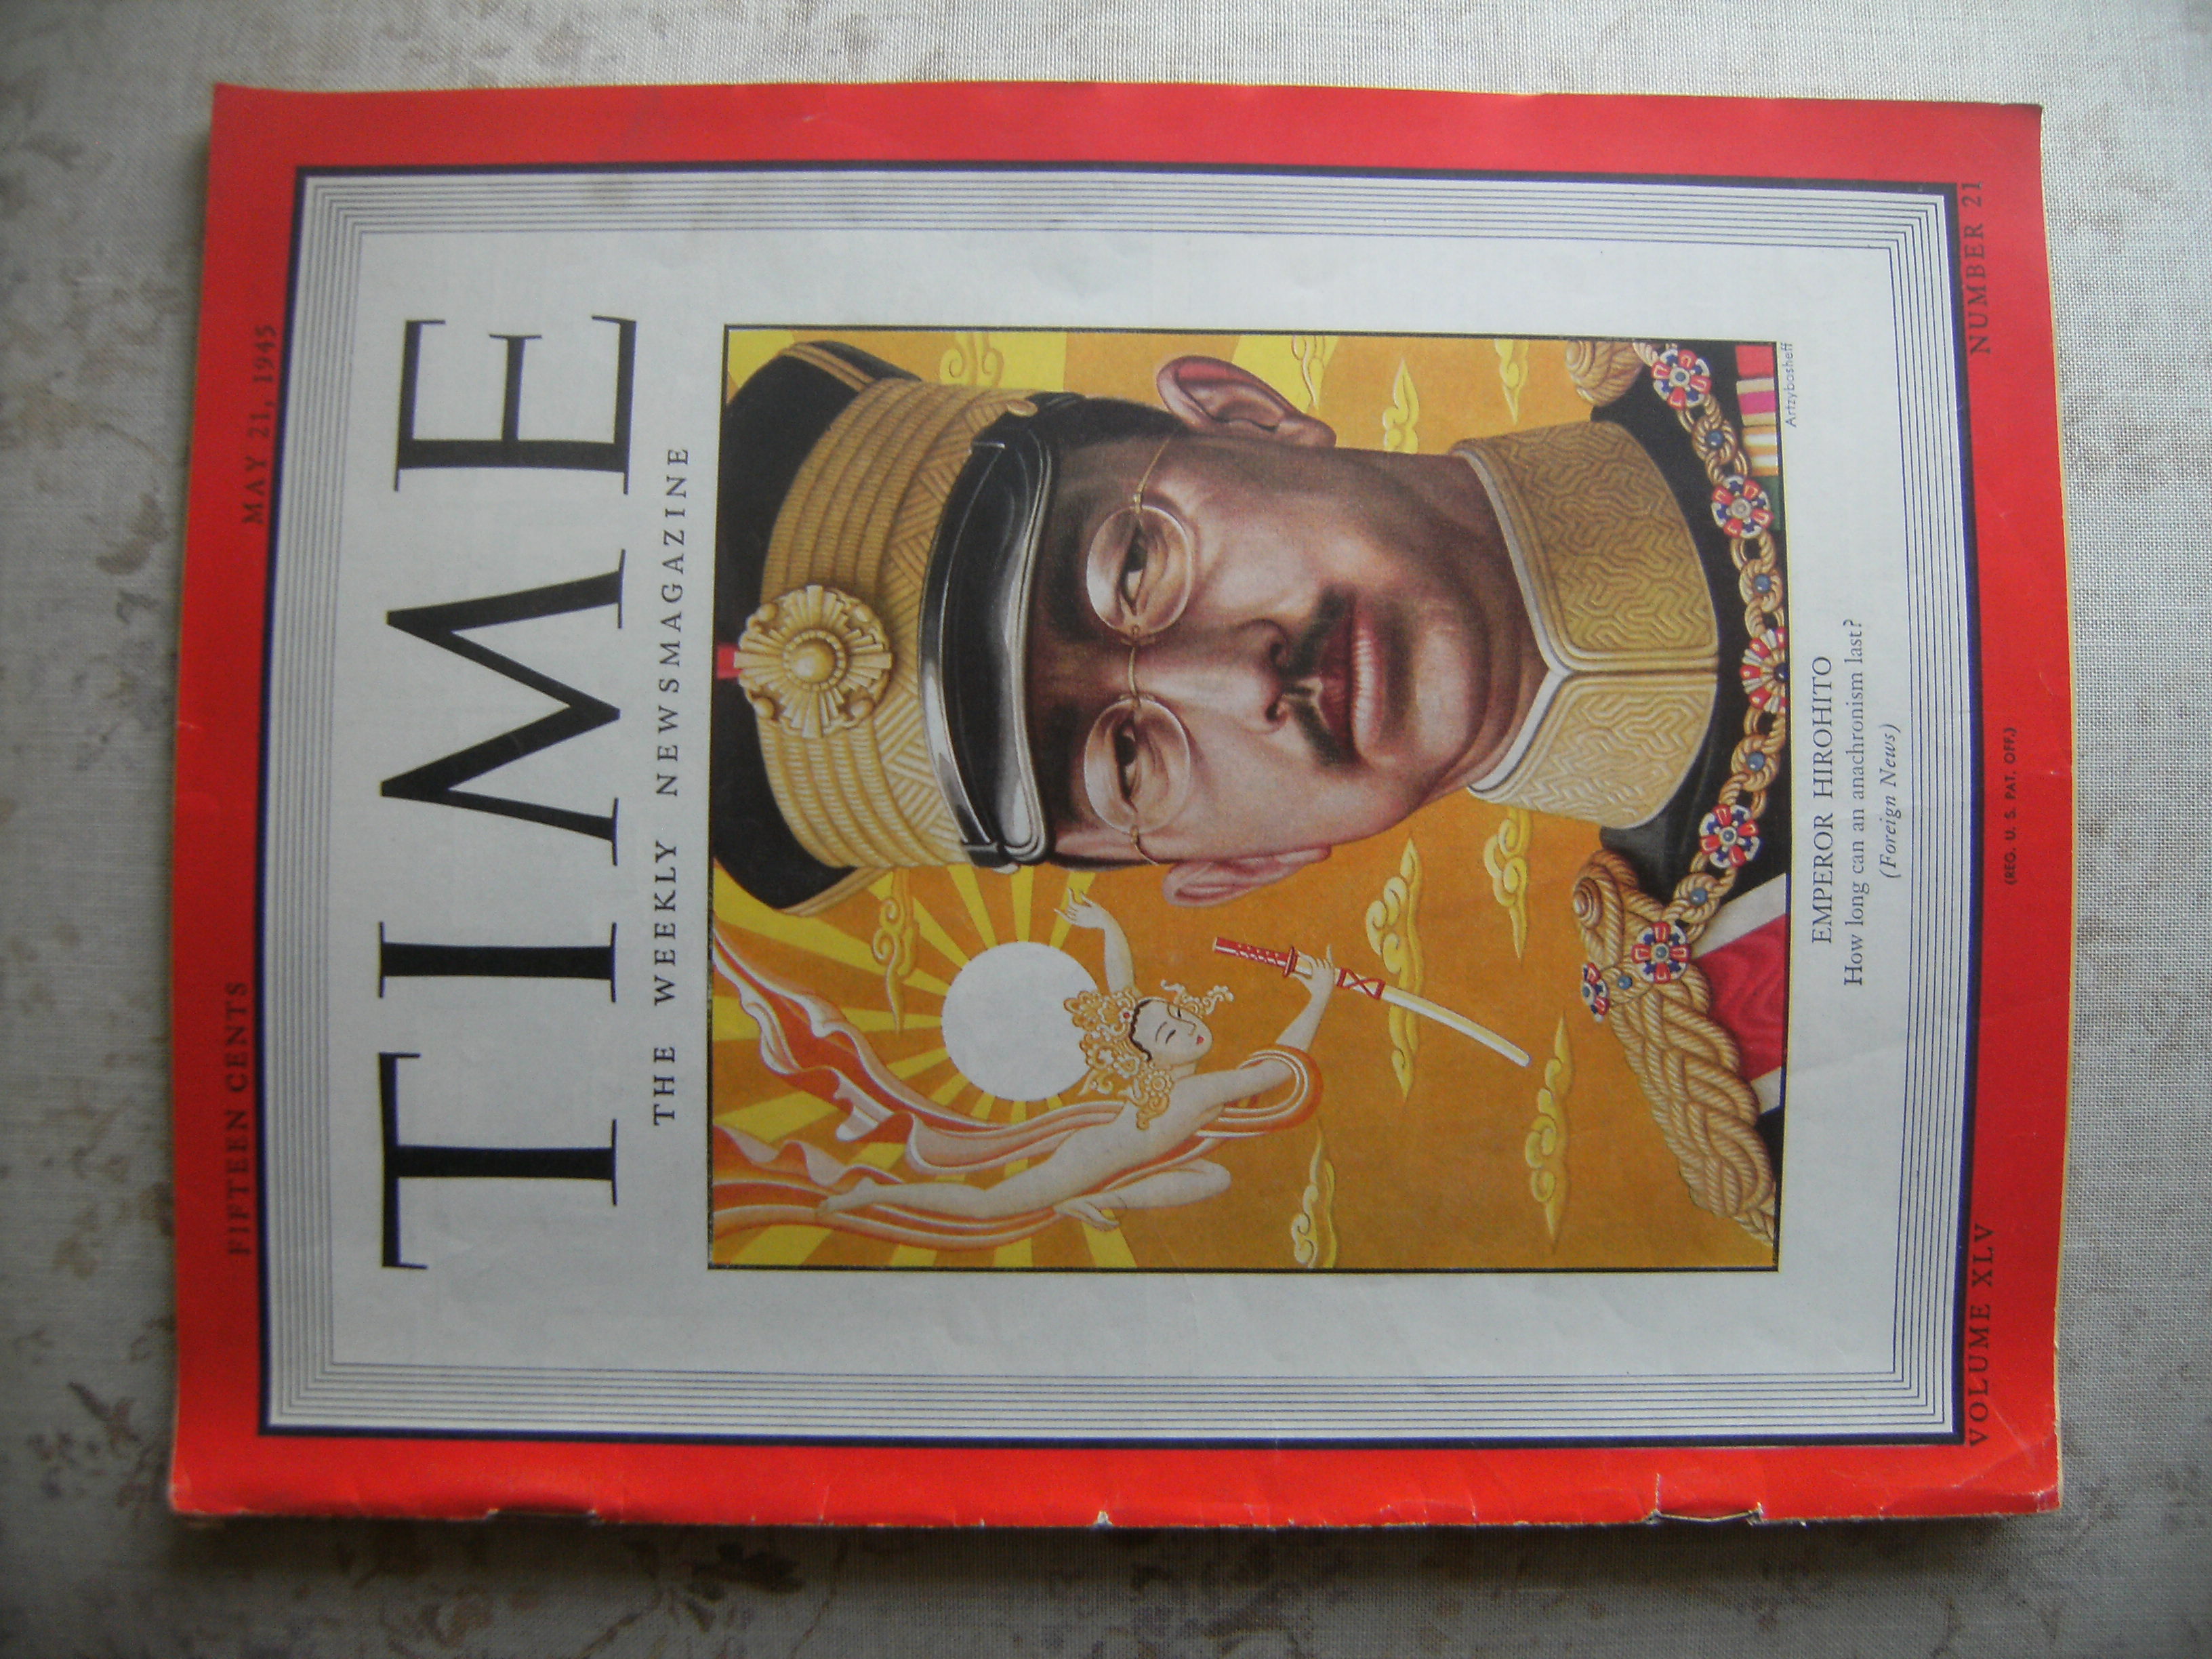 TIME MAGAZINE - EMPEROR HIROHITO